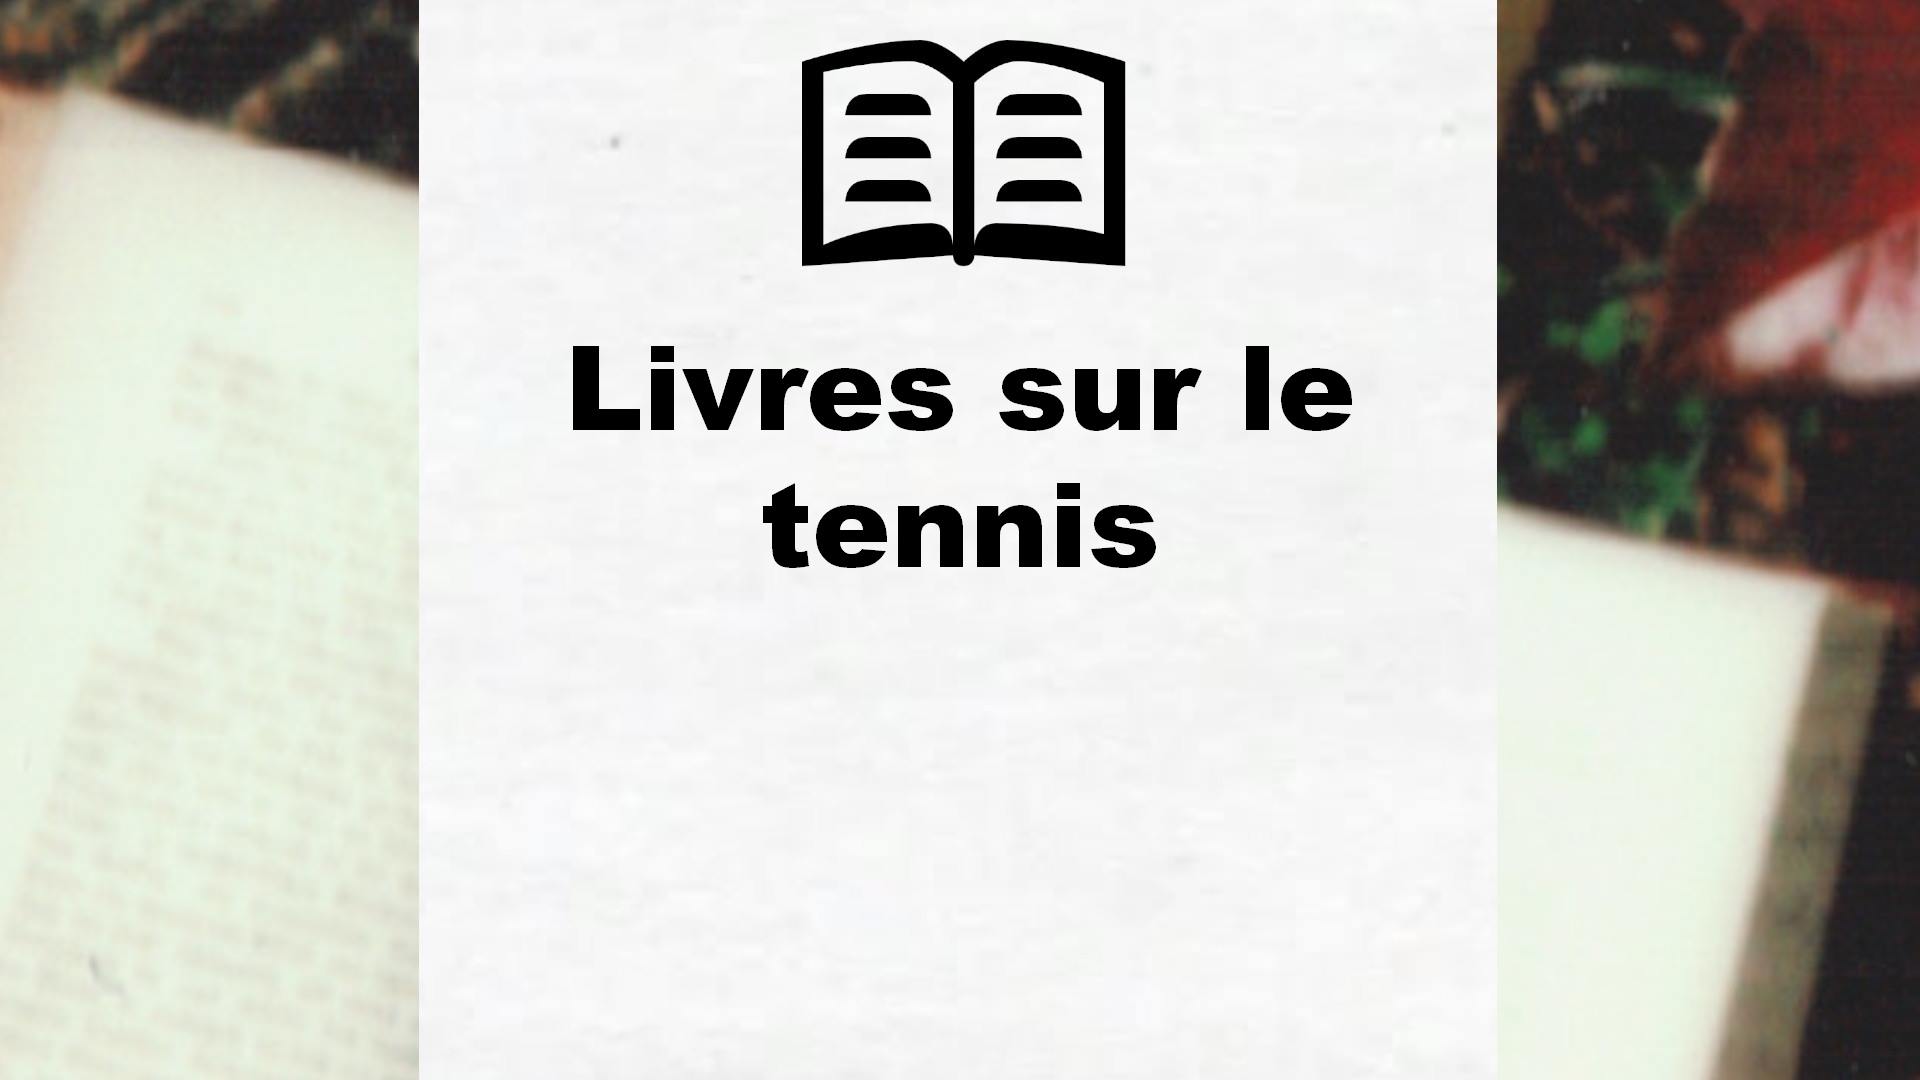 Livres sur le tennis